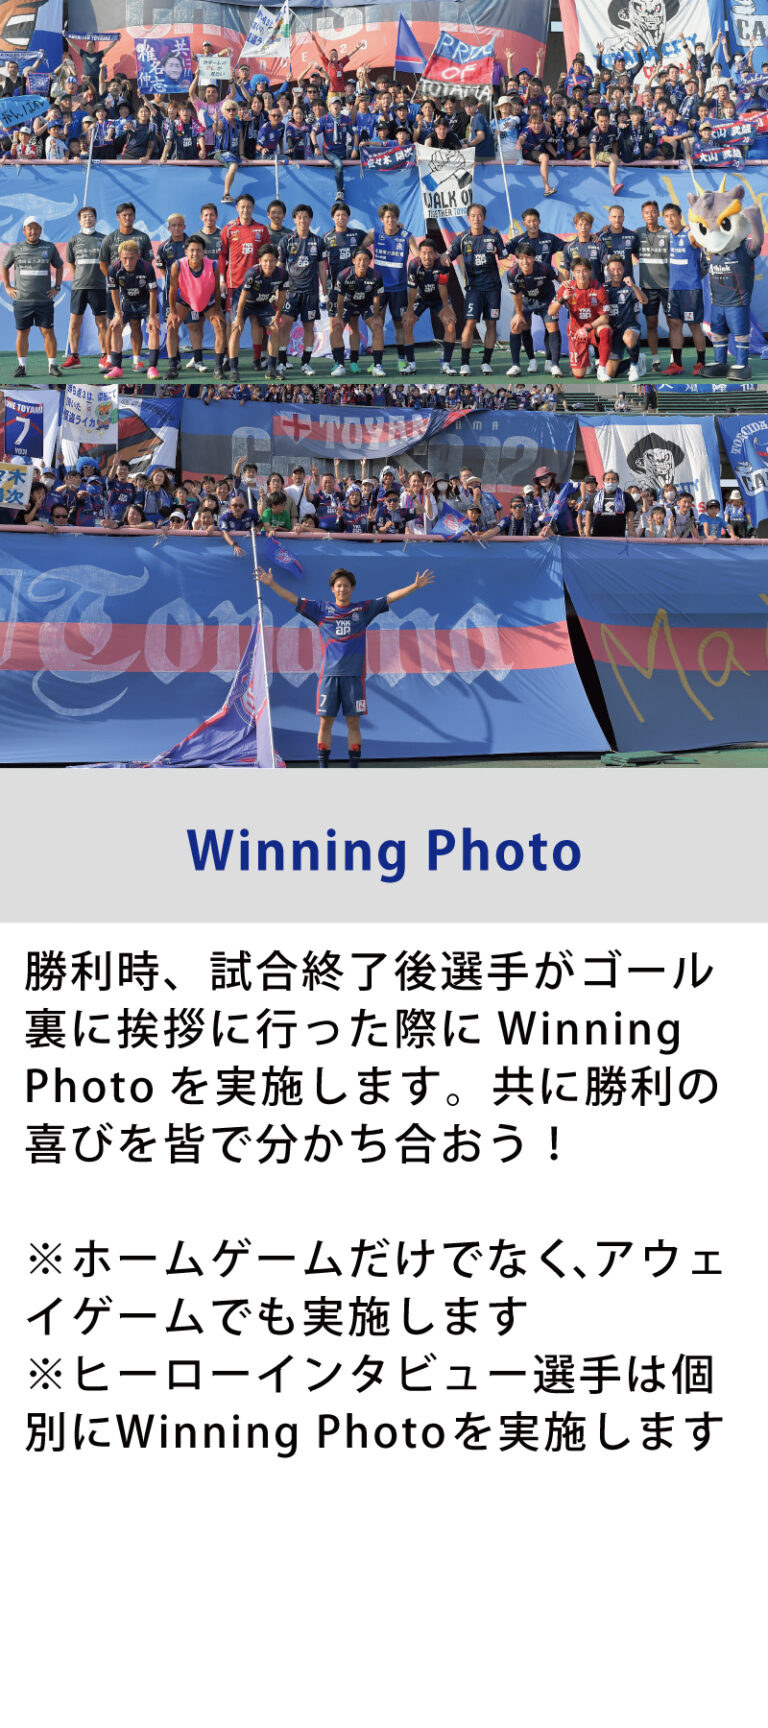 winning-photo